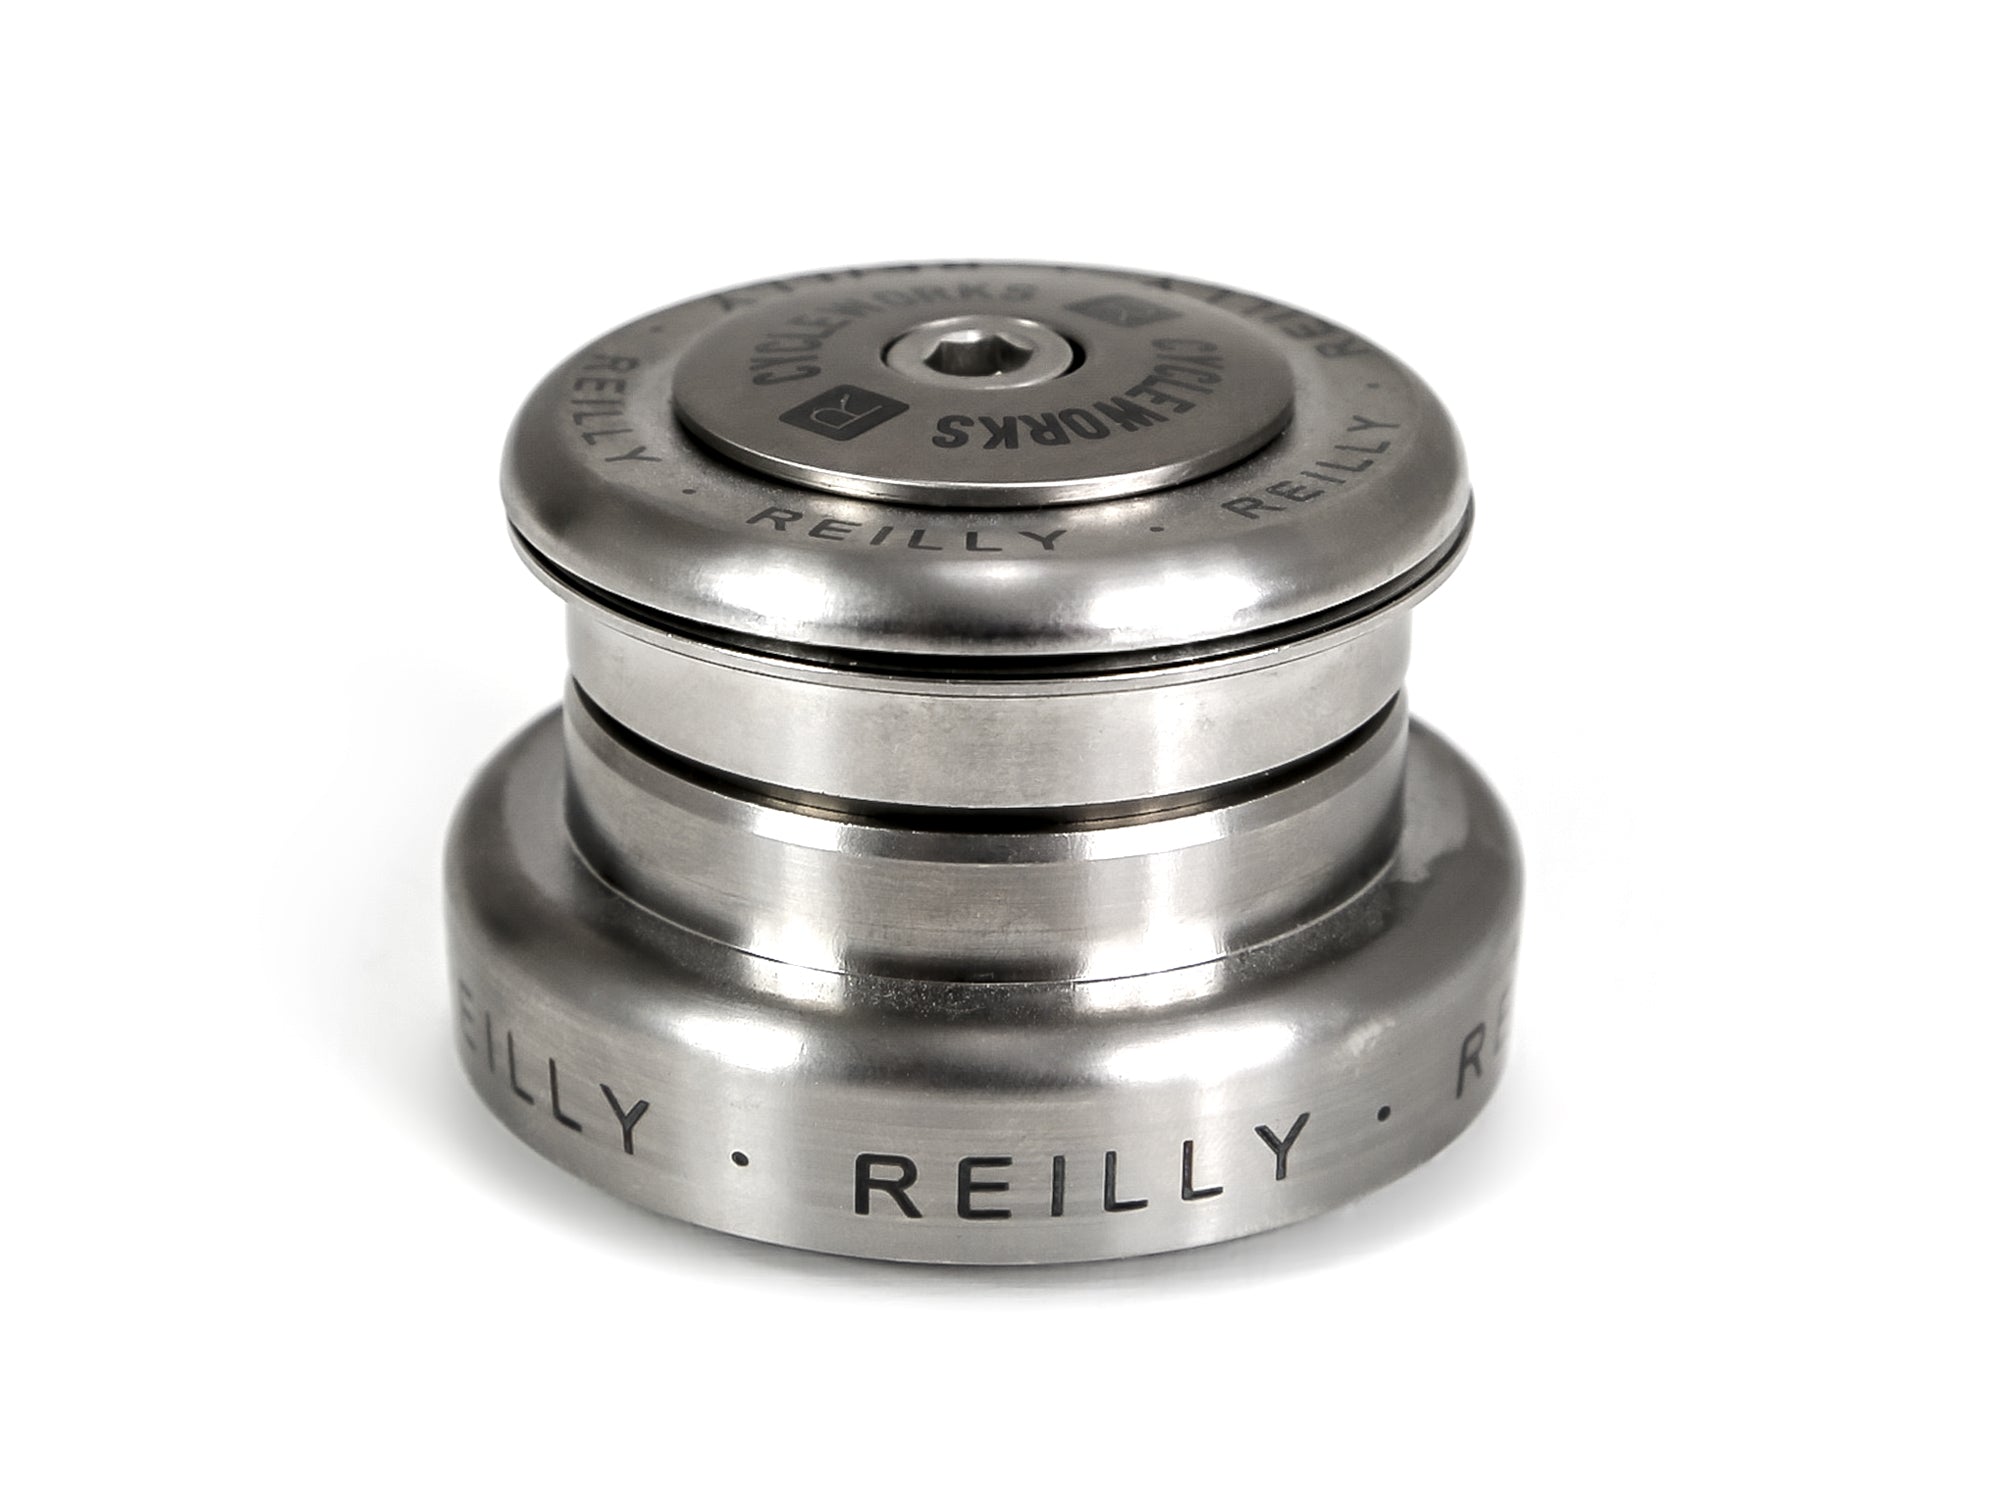 Reilly Titanium Headset on white.